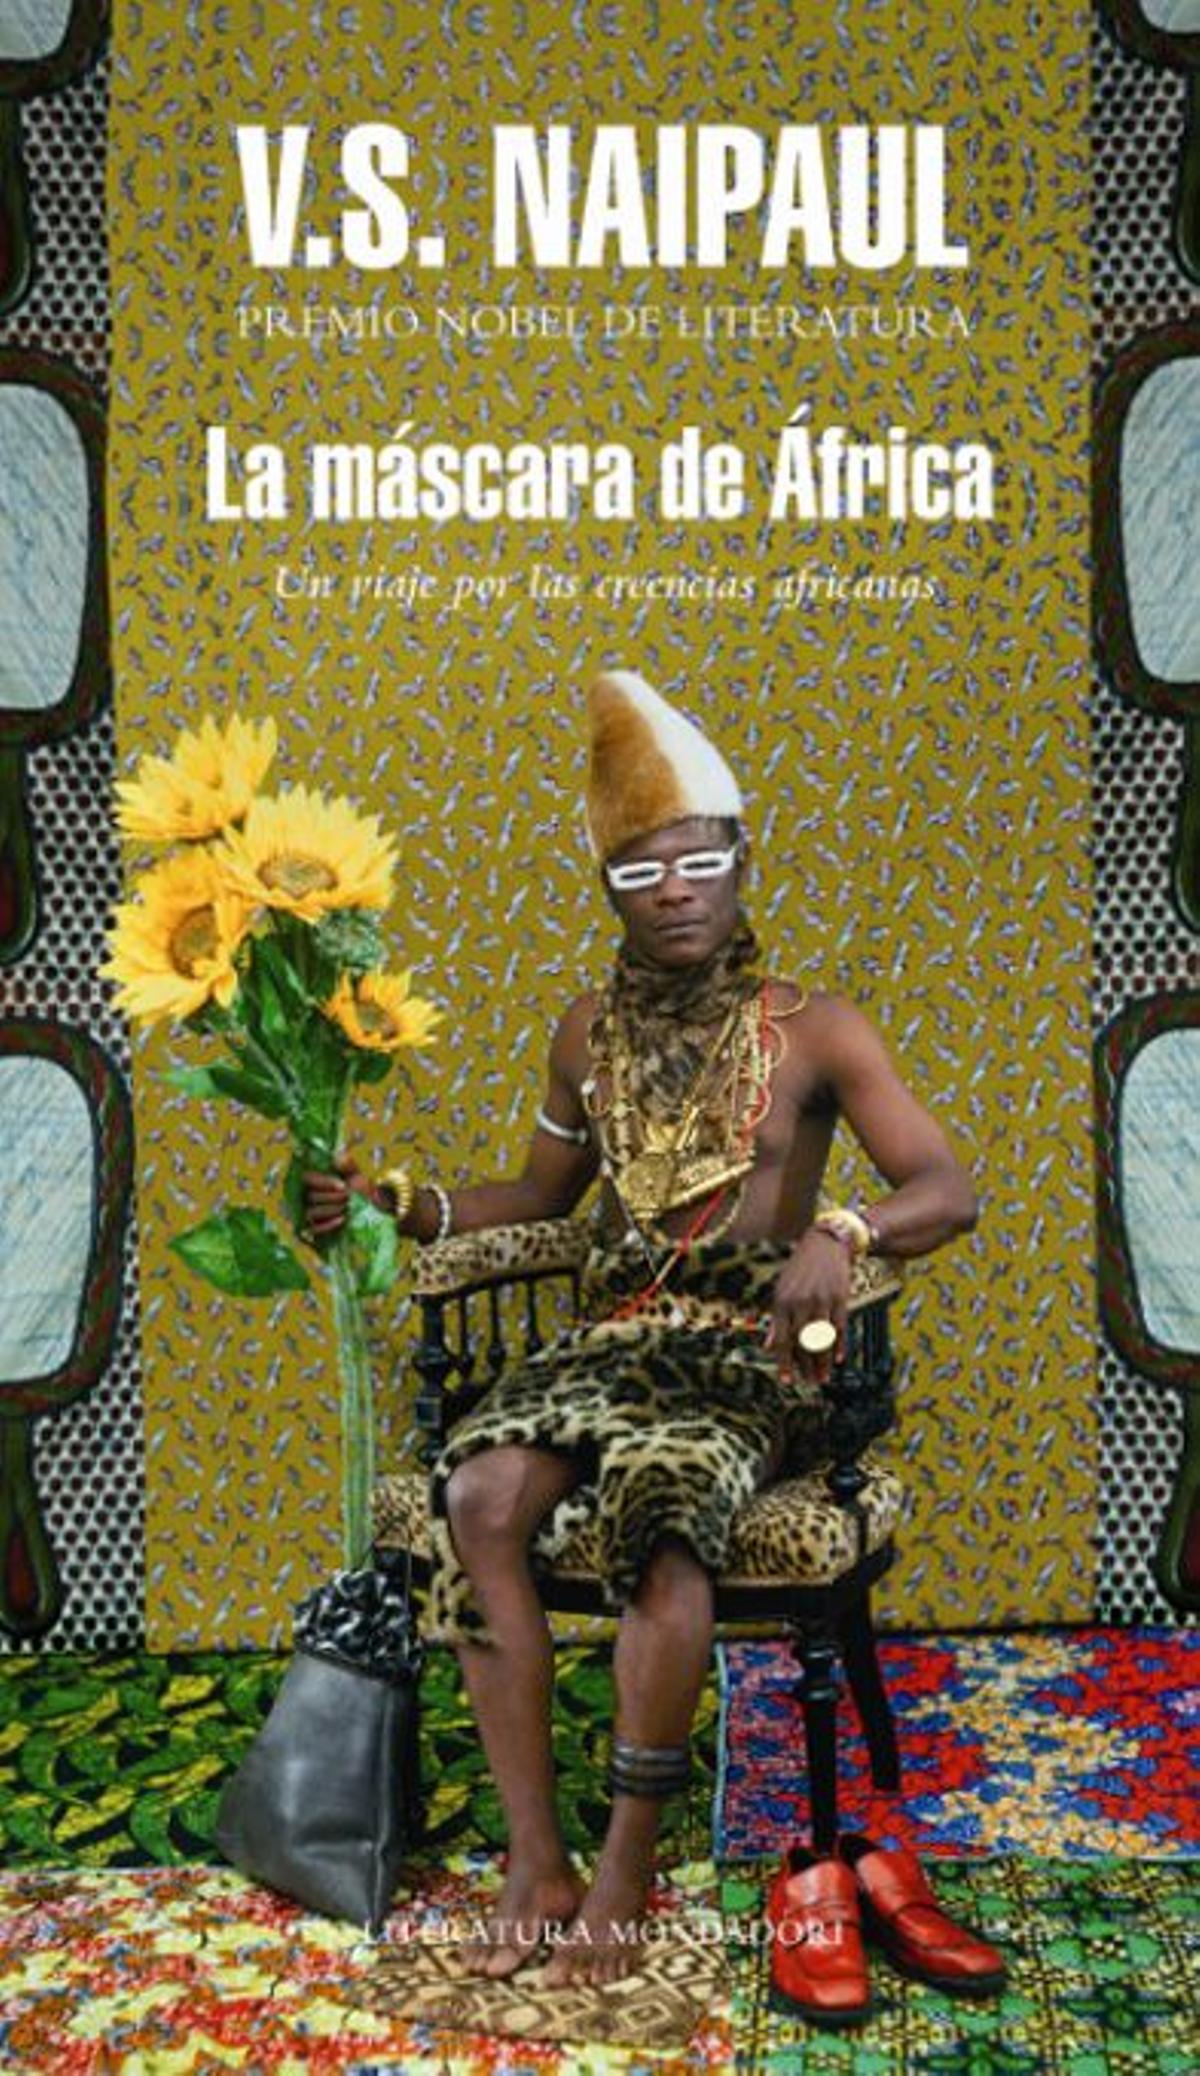 La máscara de África, V.S. Naipaul